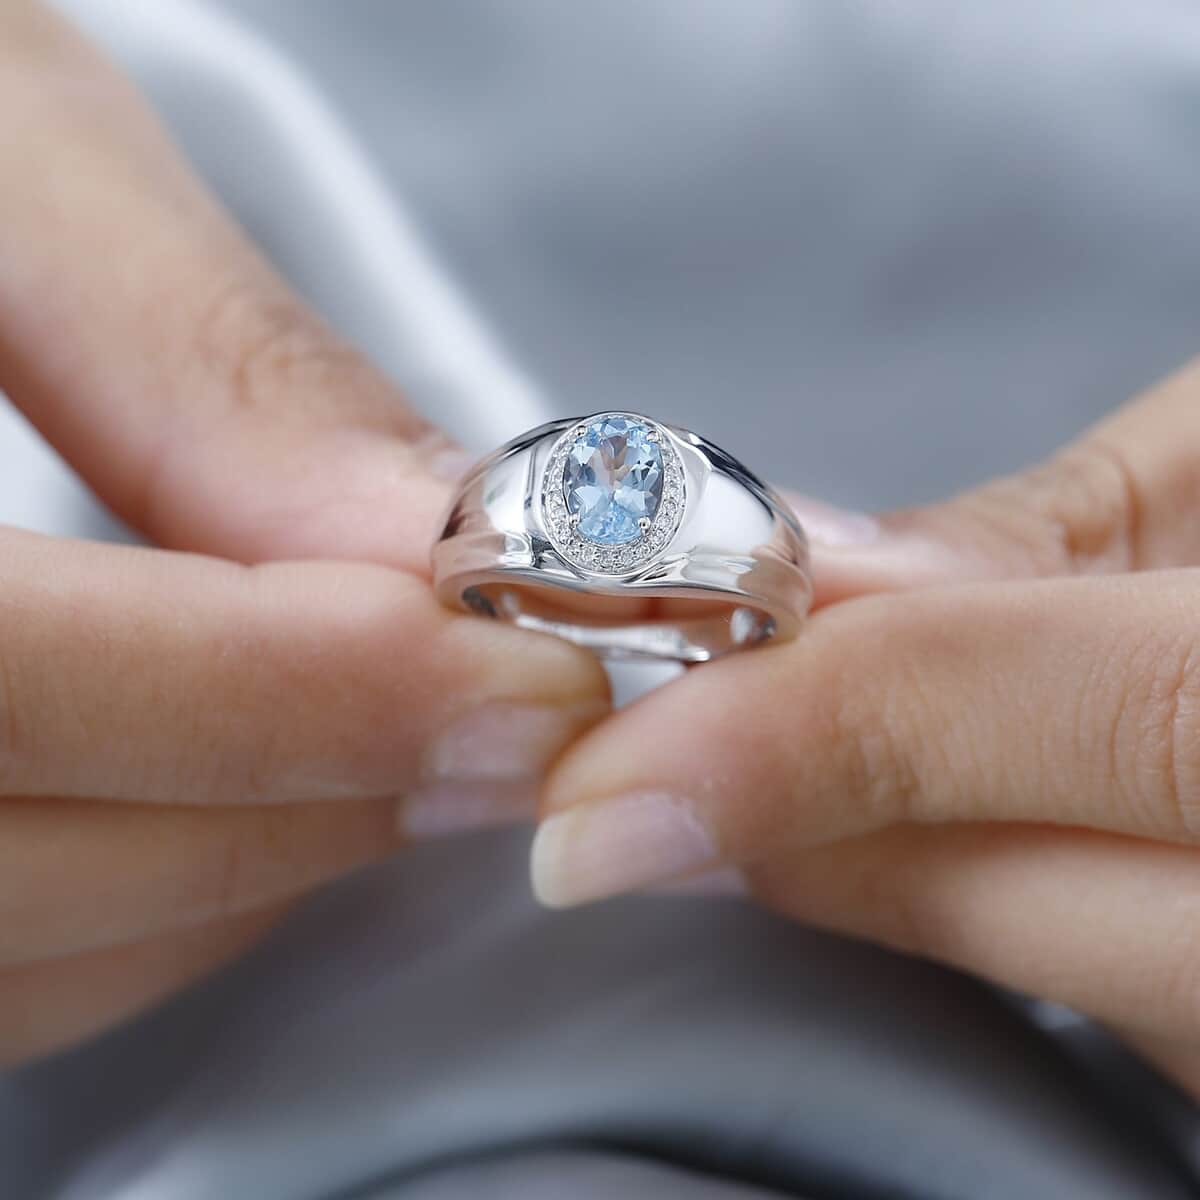 Luxoro 10K White Gold Premium Santa Maria Aquamarine and G-H I2 Diamond Men's Ring (Size 10.0) 6.15 Grams 1.20 ctw image number 2